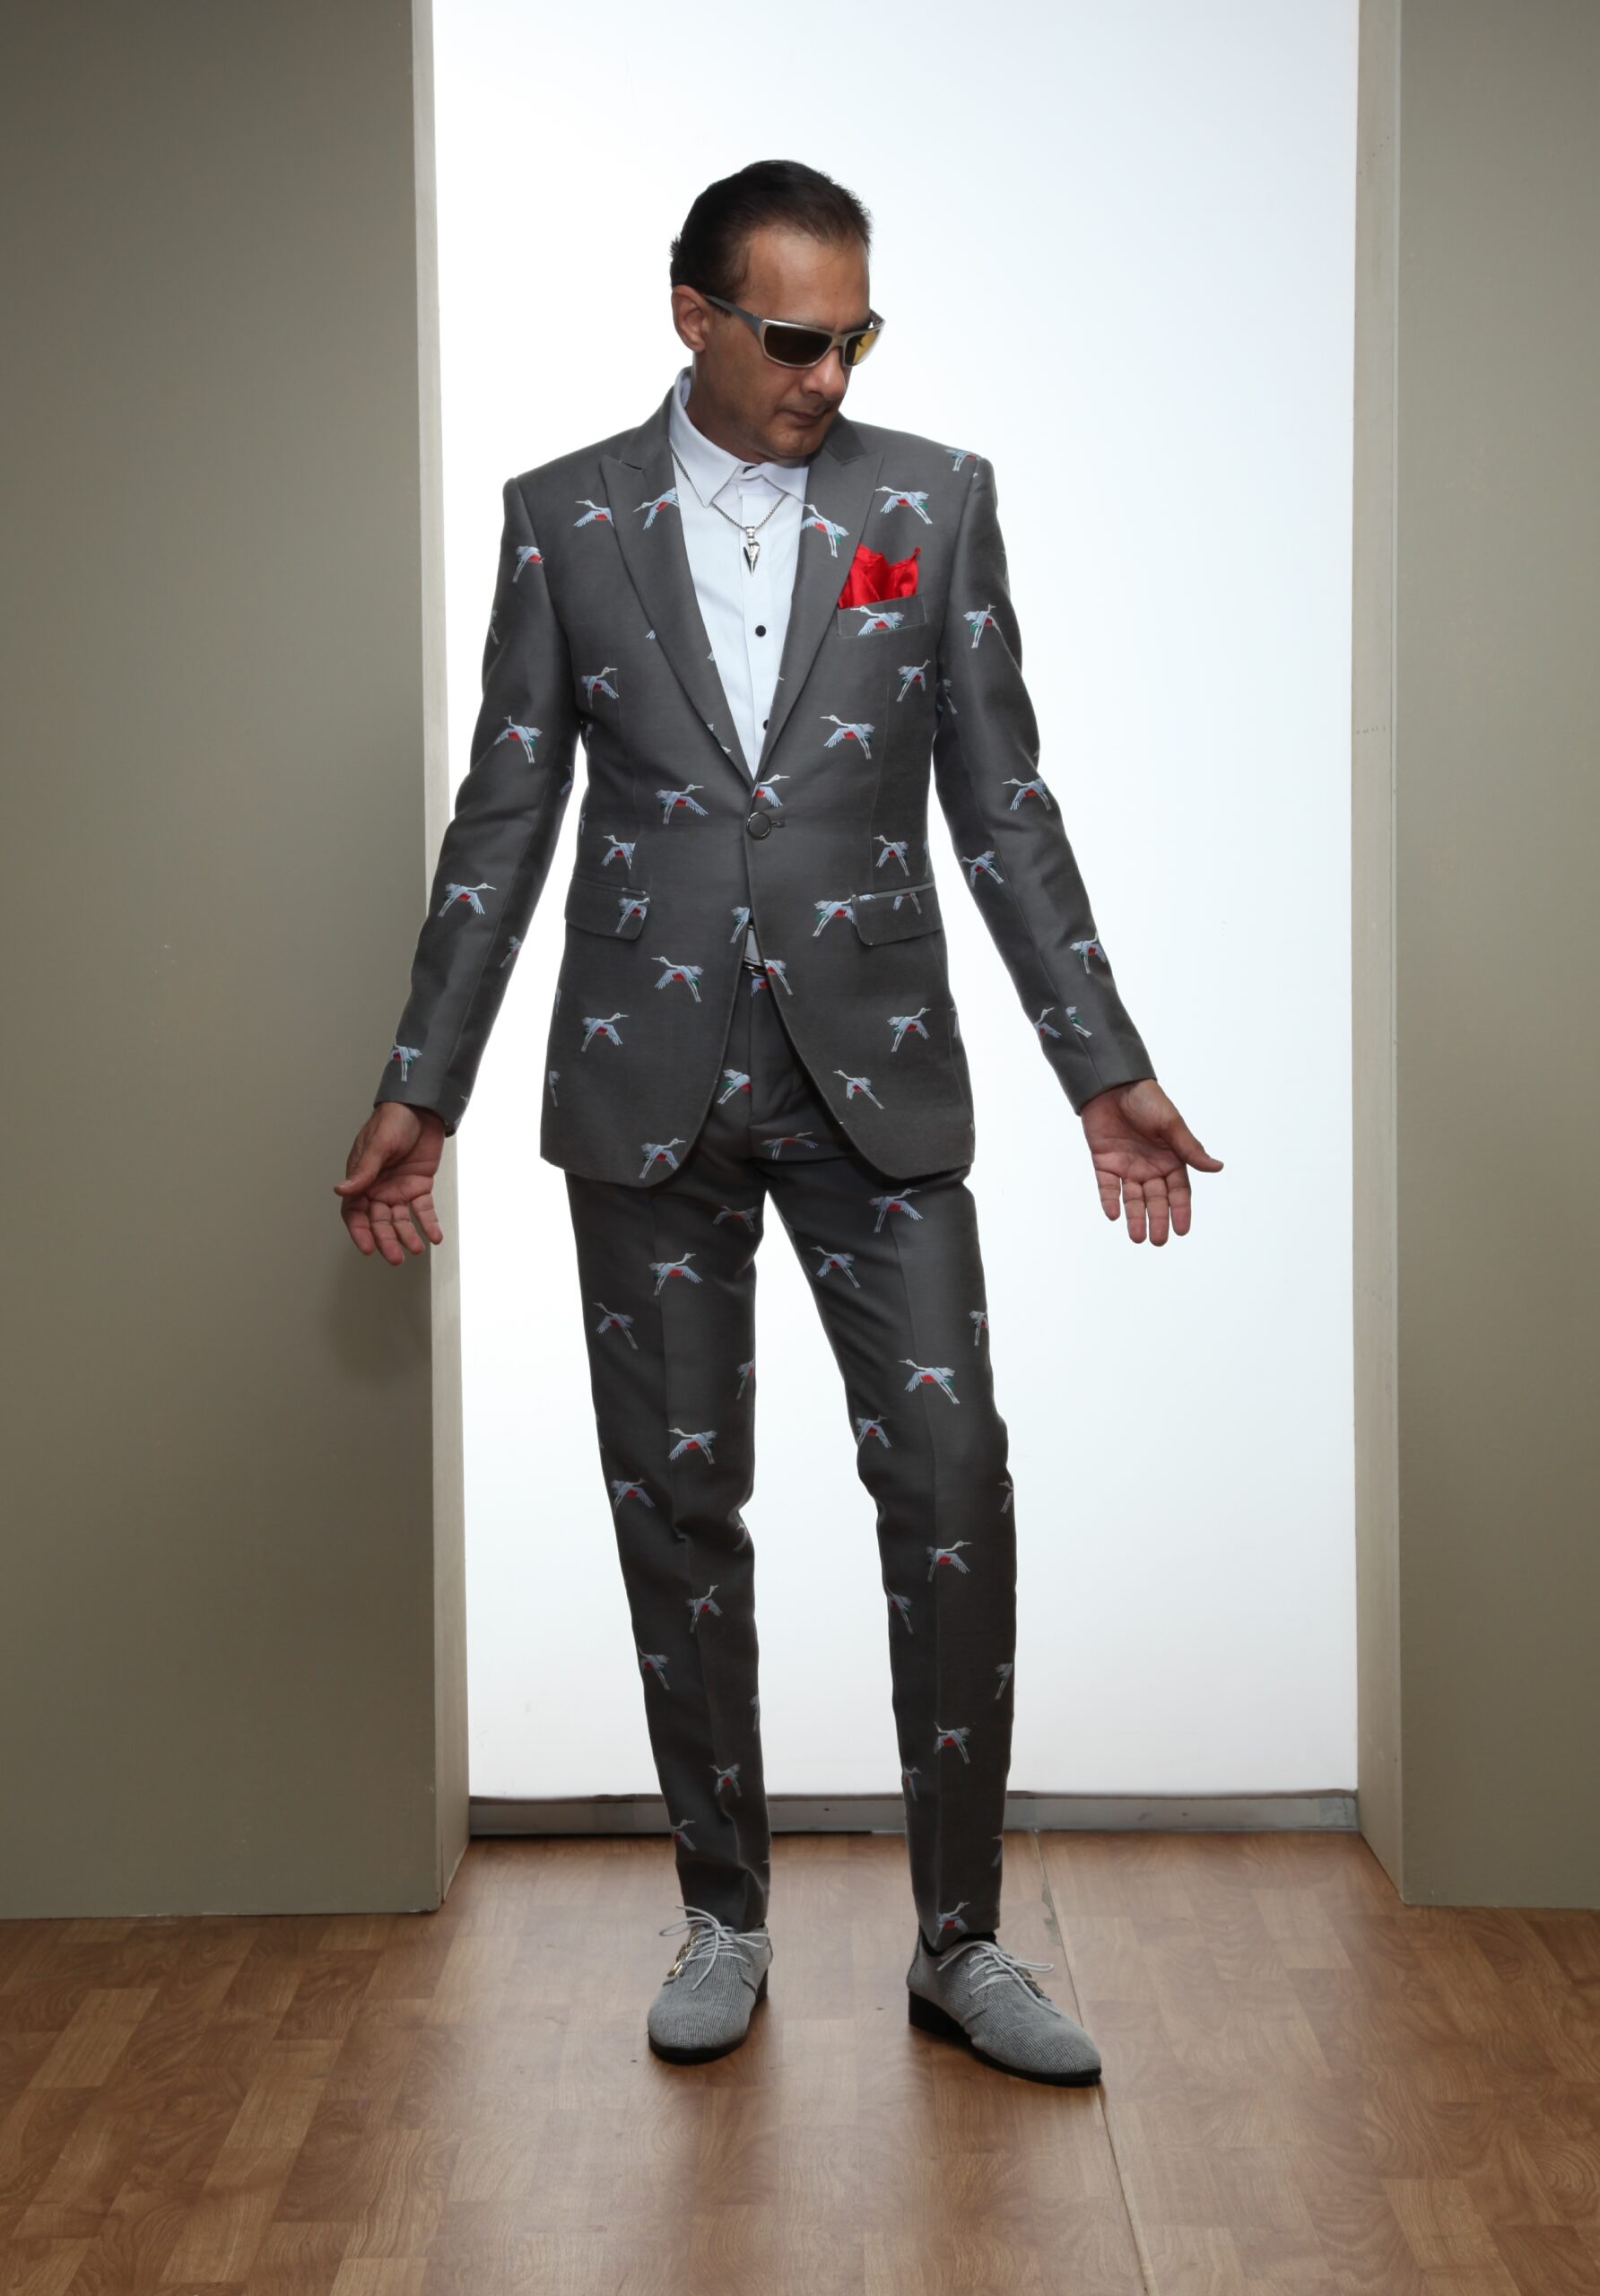 Mst 5009 01 Rent Rental Hire Tuxedo Suit Black Tie Suit Designer Suits Shop Tailor Tailors Singapore Wedding